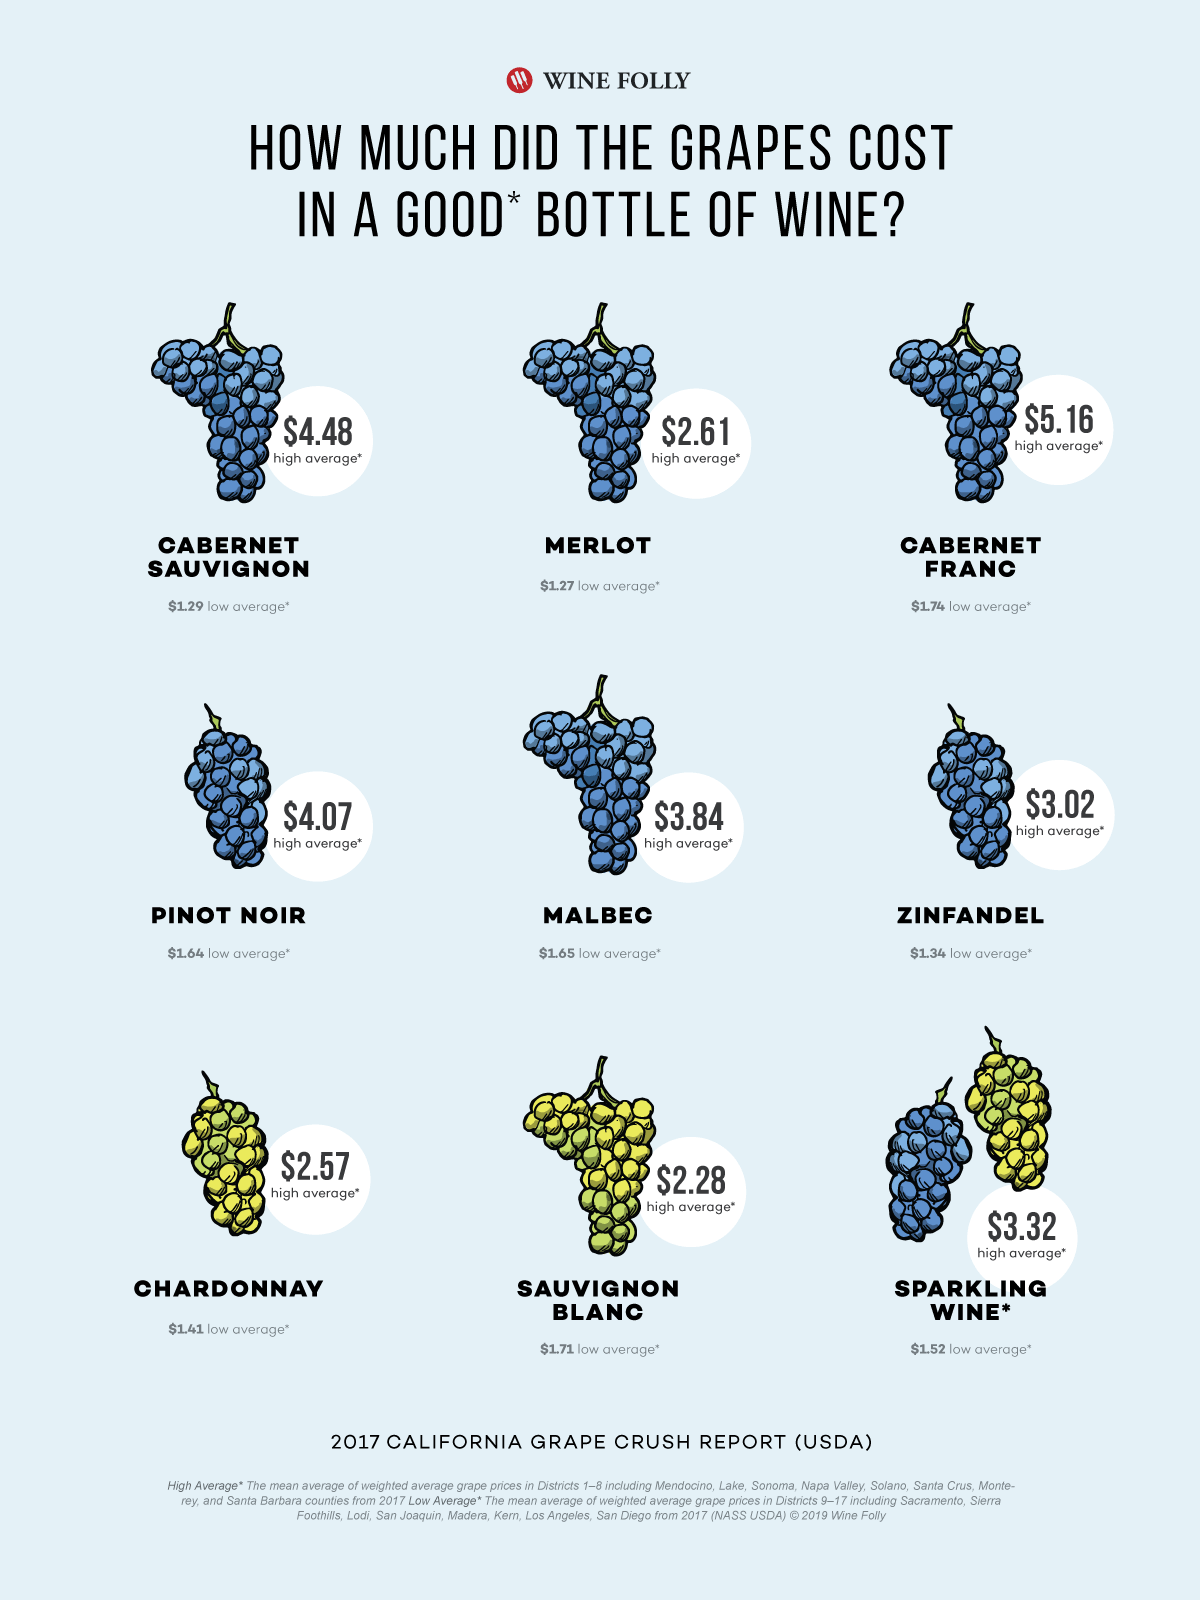 Le coût réel des raisins dans une seule bouteille de vin - Infographie par Wine Folly